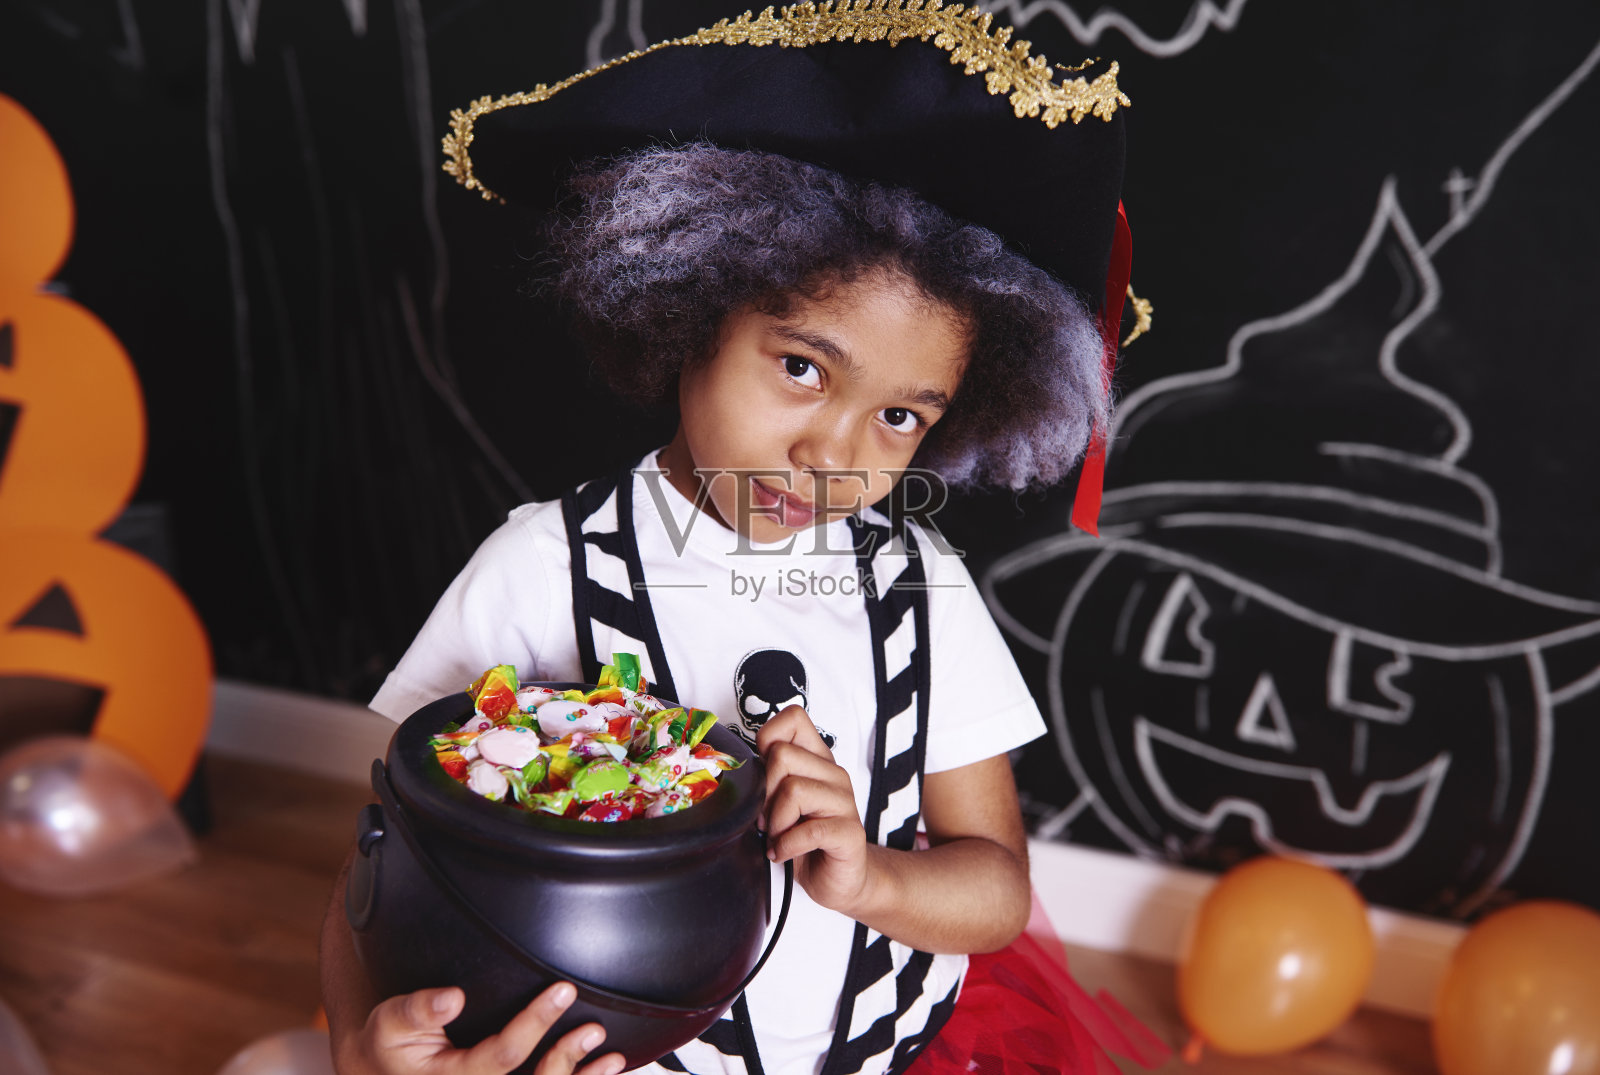 穿着海盗服装的女孩拿着一碗糖果照片摄影图片